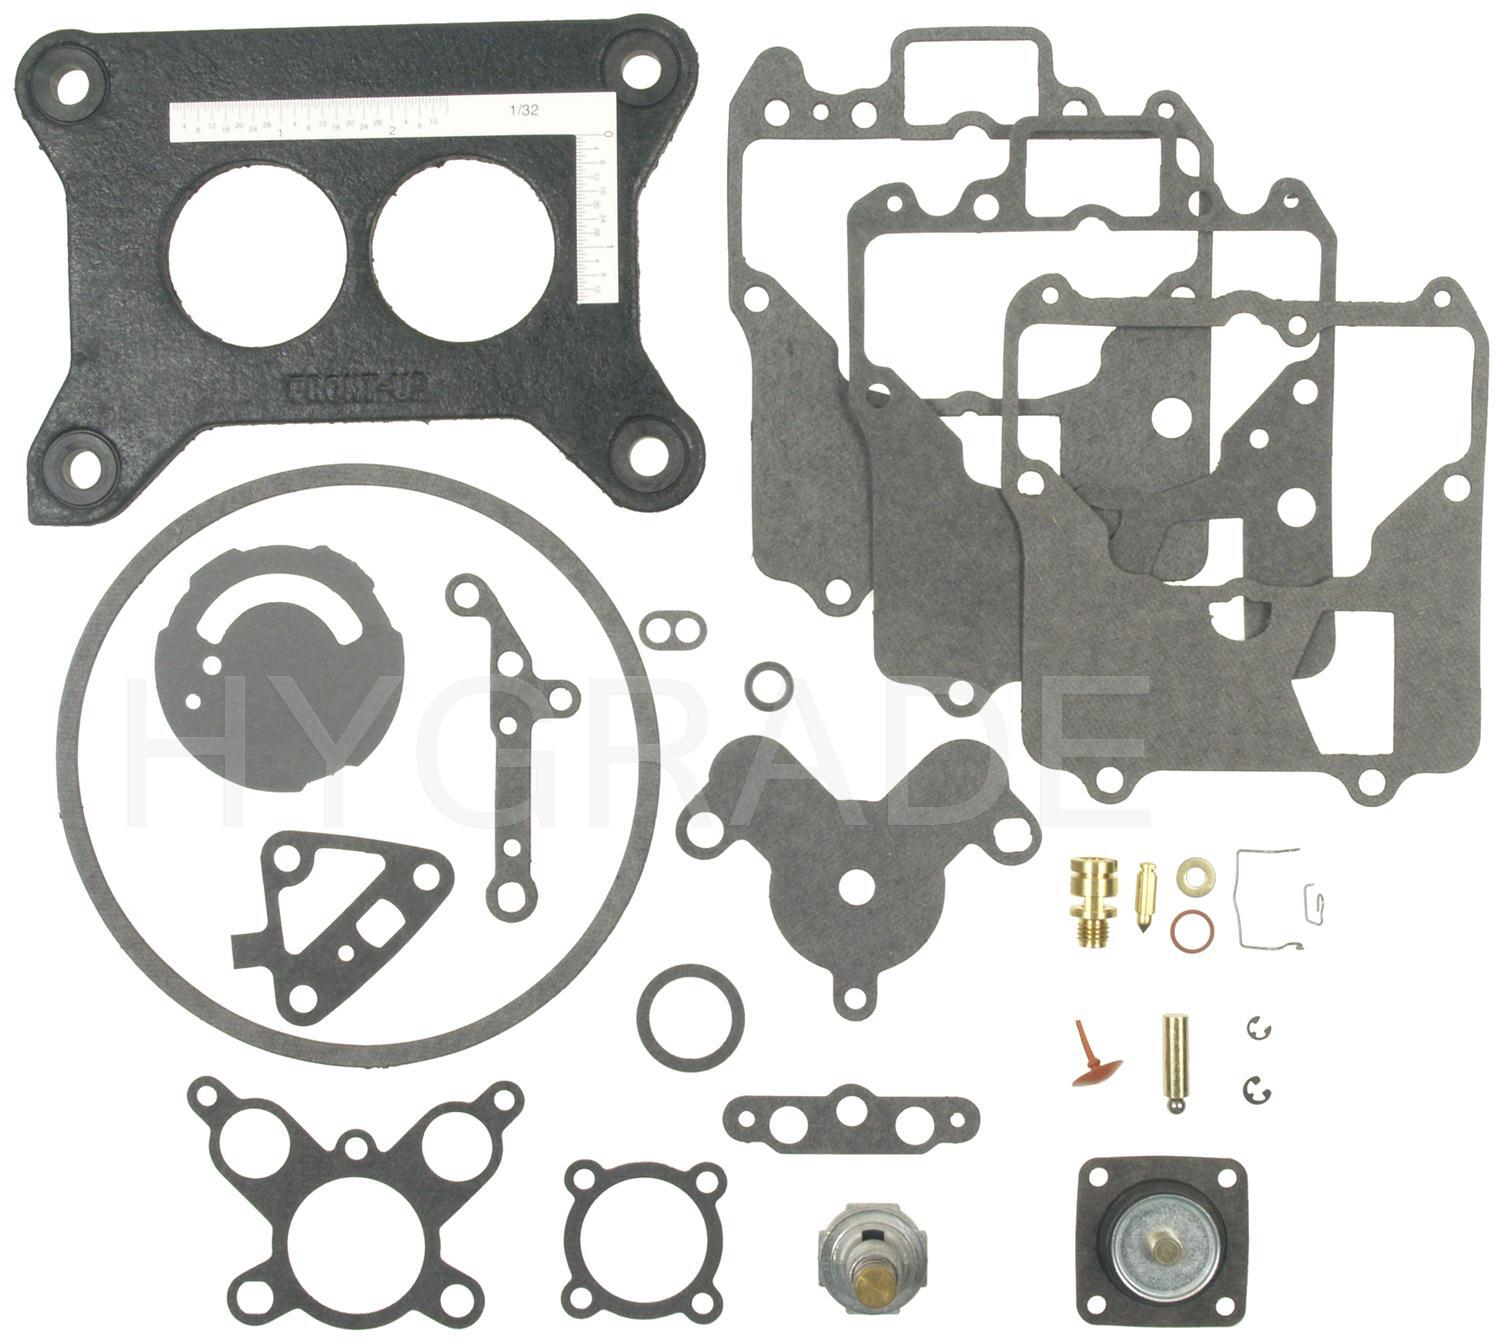 Standard Motor Products 1551 Carburetor Kit